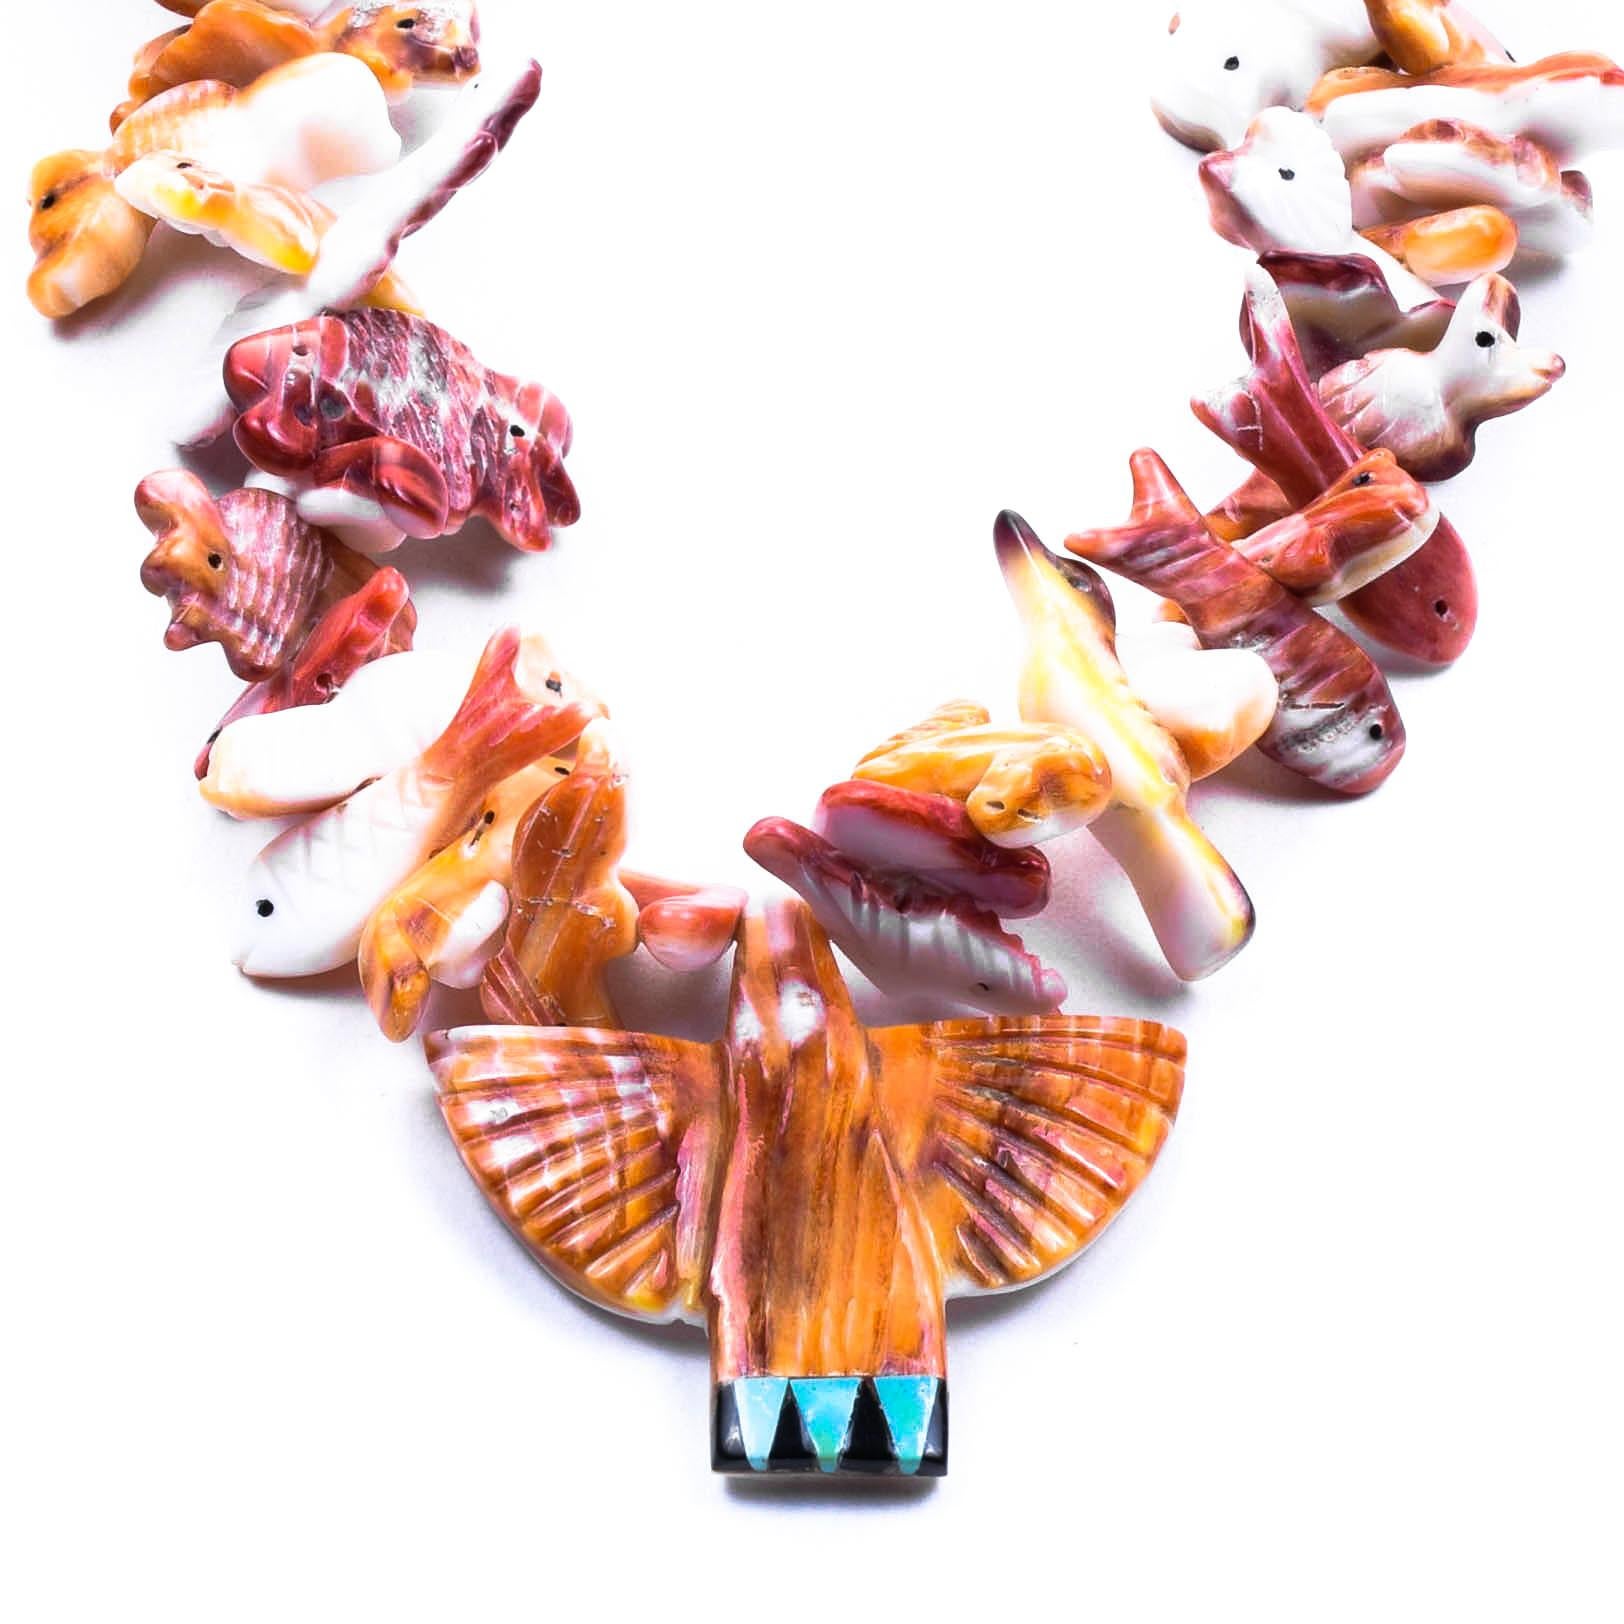 Schöne Zuni Fetisch Halskette mit verschiedenen Tieren, handgeschnitzt in stacheligen Auster, mit Thunderbird Zentrum mit Türkis.

ZEITRAUM: nach 1950

URSPRUNG: Zuni, Südwesten

GRÖSSE: Länge: 33 1/4